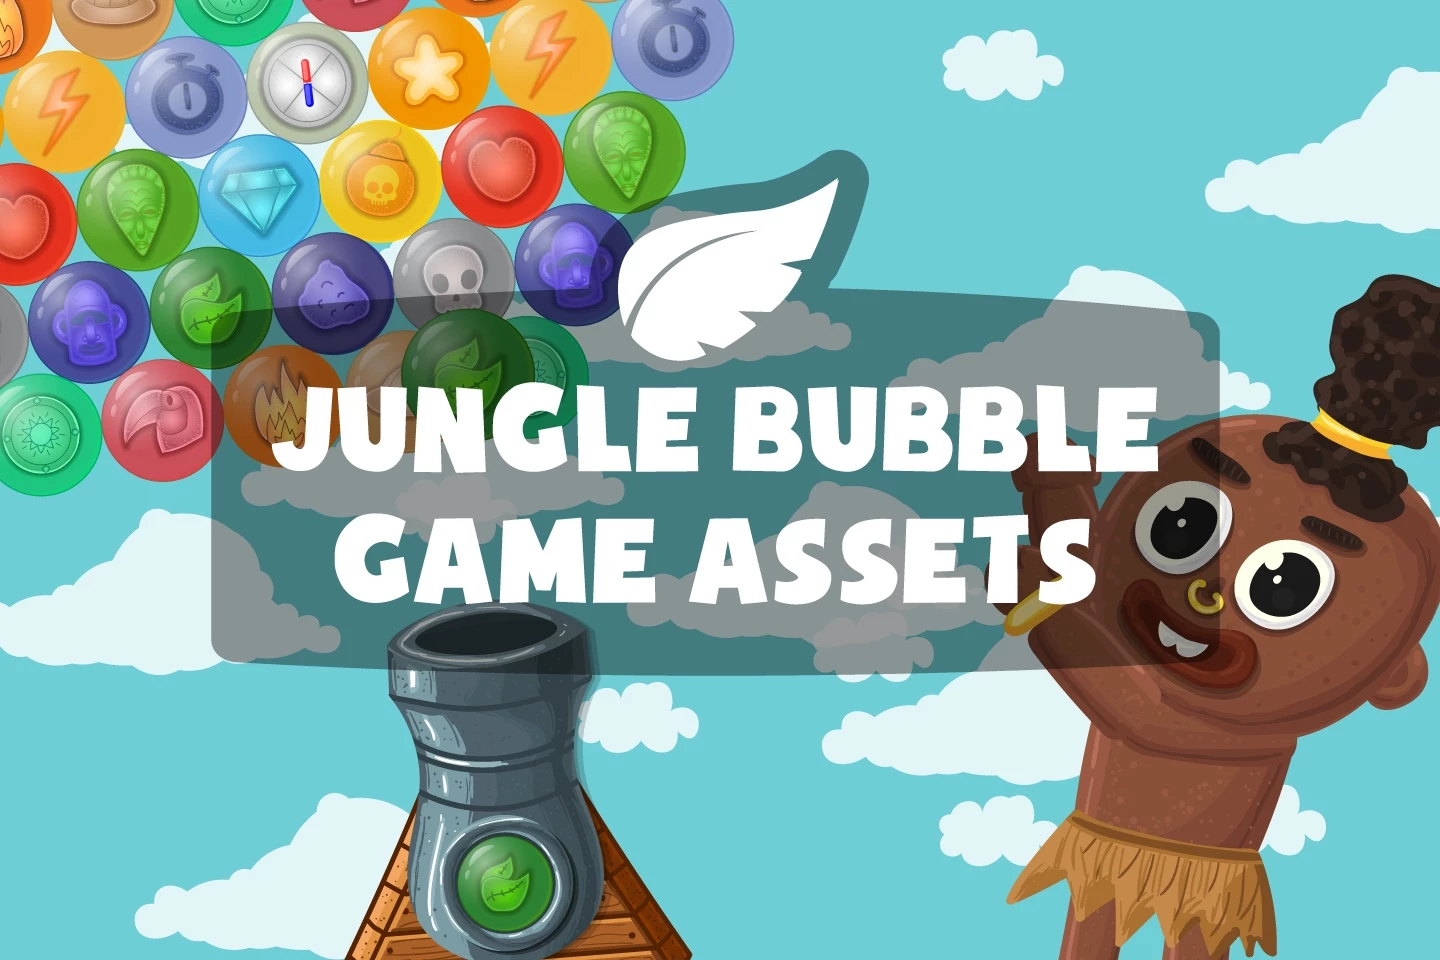 Jungle Bubble Game Assets